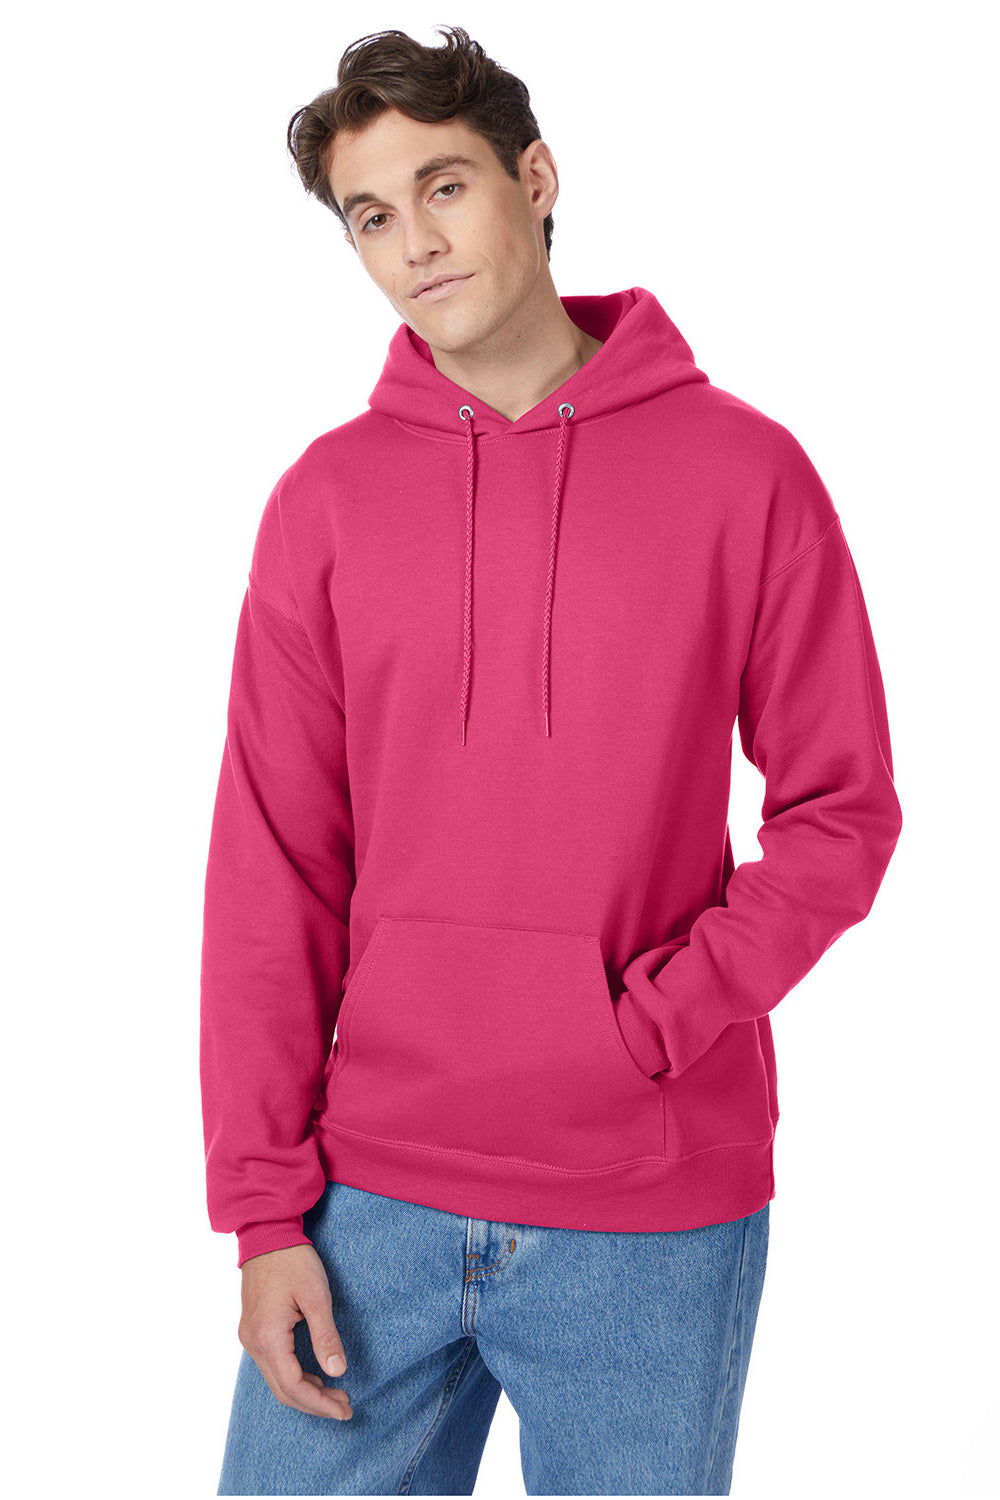 Hanes P170: EcoSmart Hooded Sweatshirt